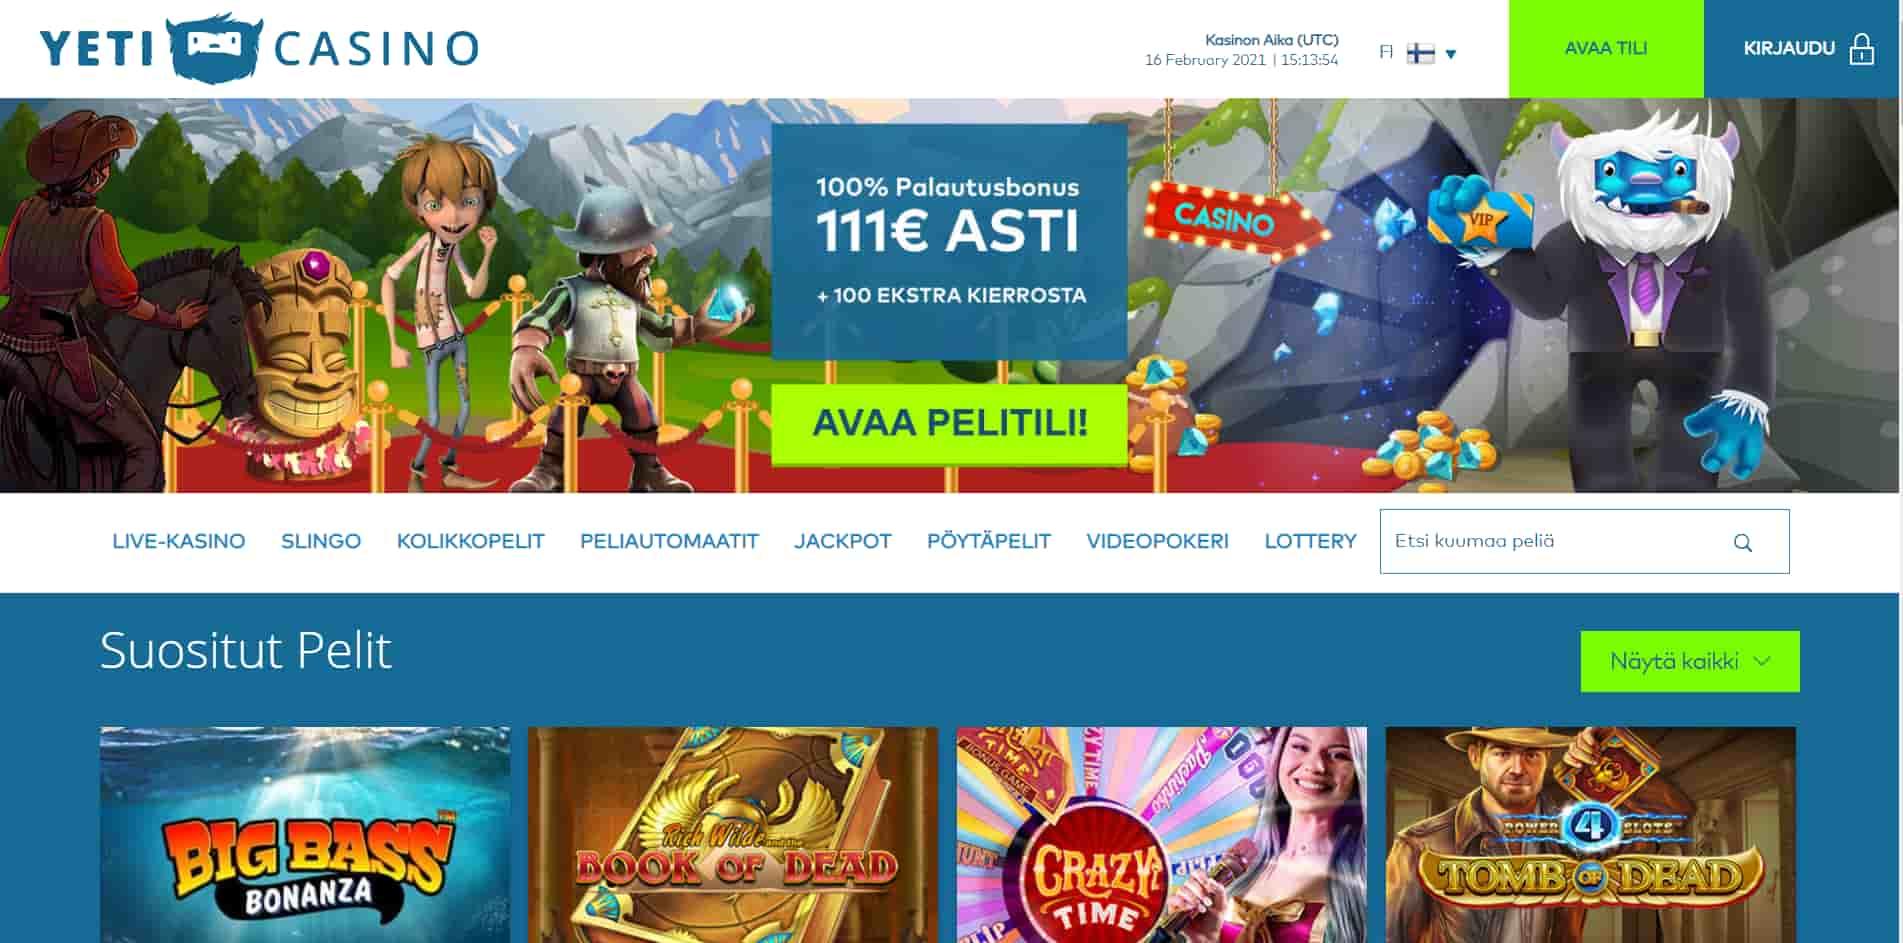 Yeti casino homepage